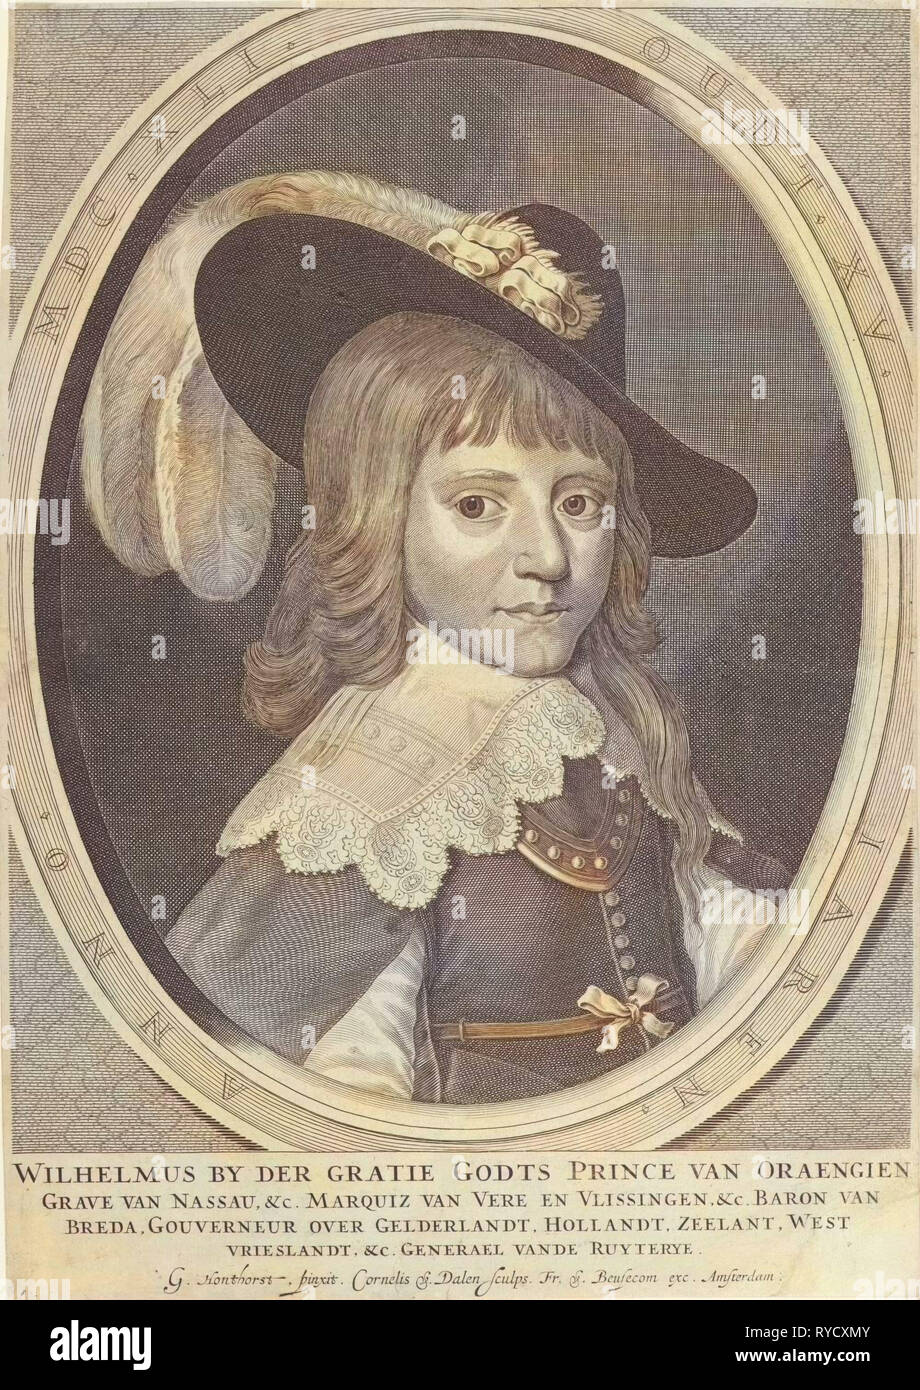 Portrait of Willem II, prins van Oranje, 15 years old, Cornelis van Dalen (I), Francoys van Beusekom, c. 1642 - c. 1665 Stock Photo